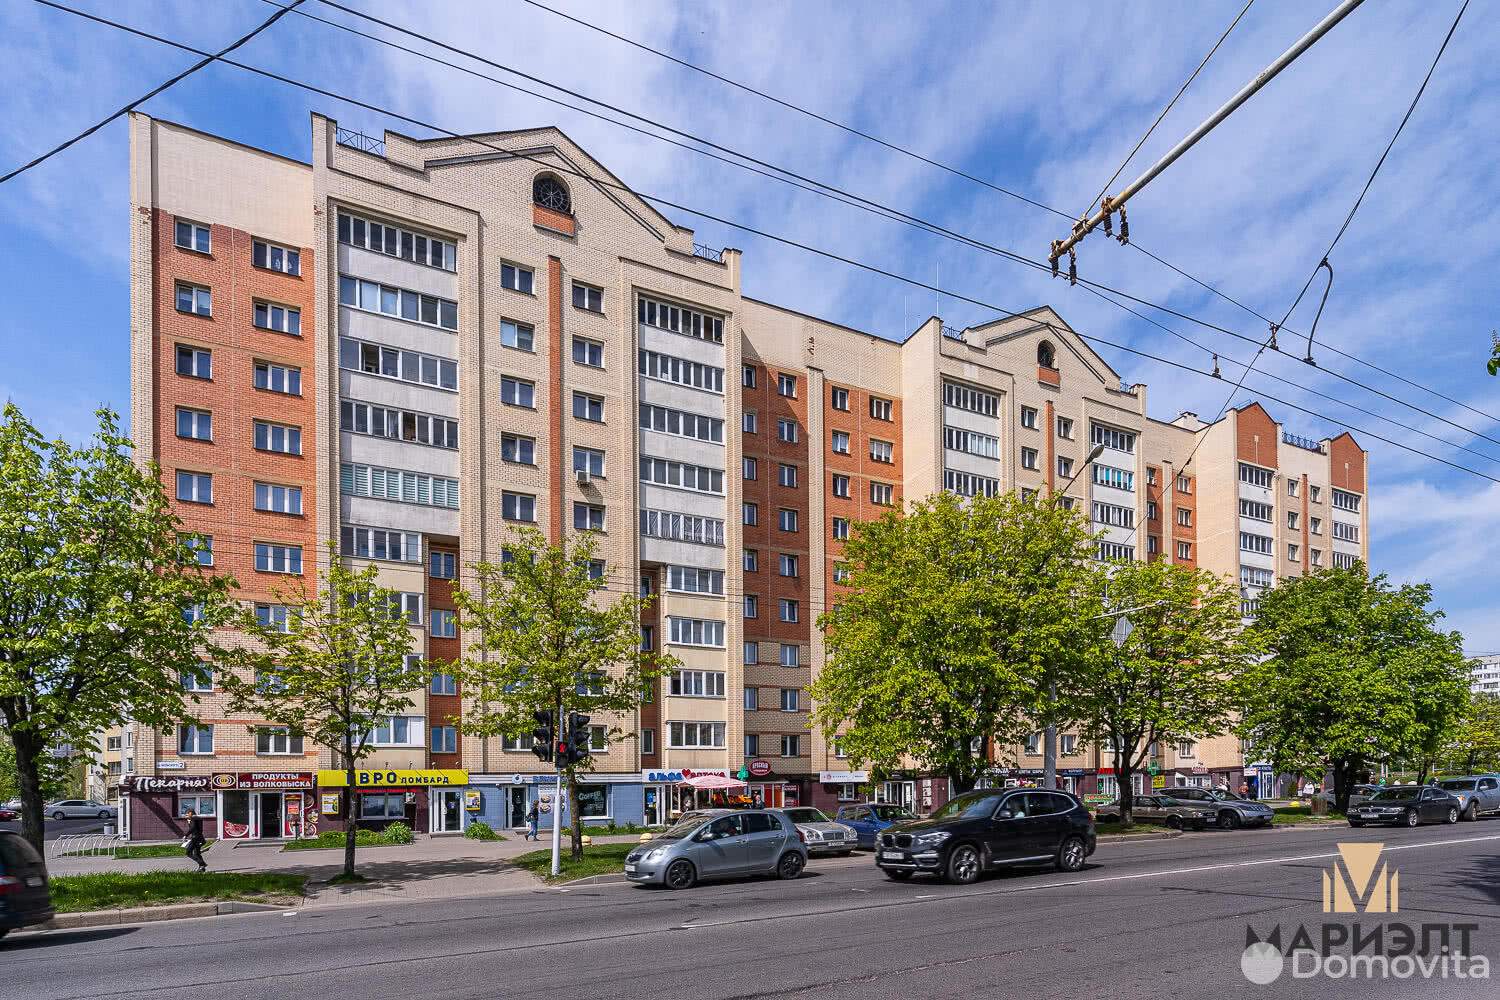 Аренда торгового помещения на ул. Бельского, д. 2 в Минске, 2129EUR, код 965001 - фото 6